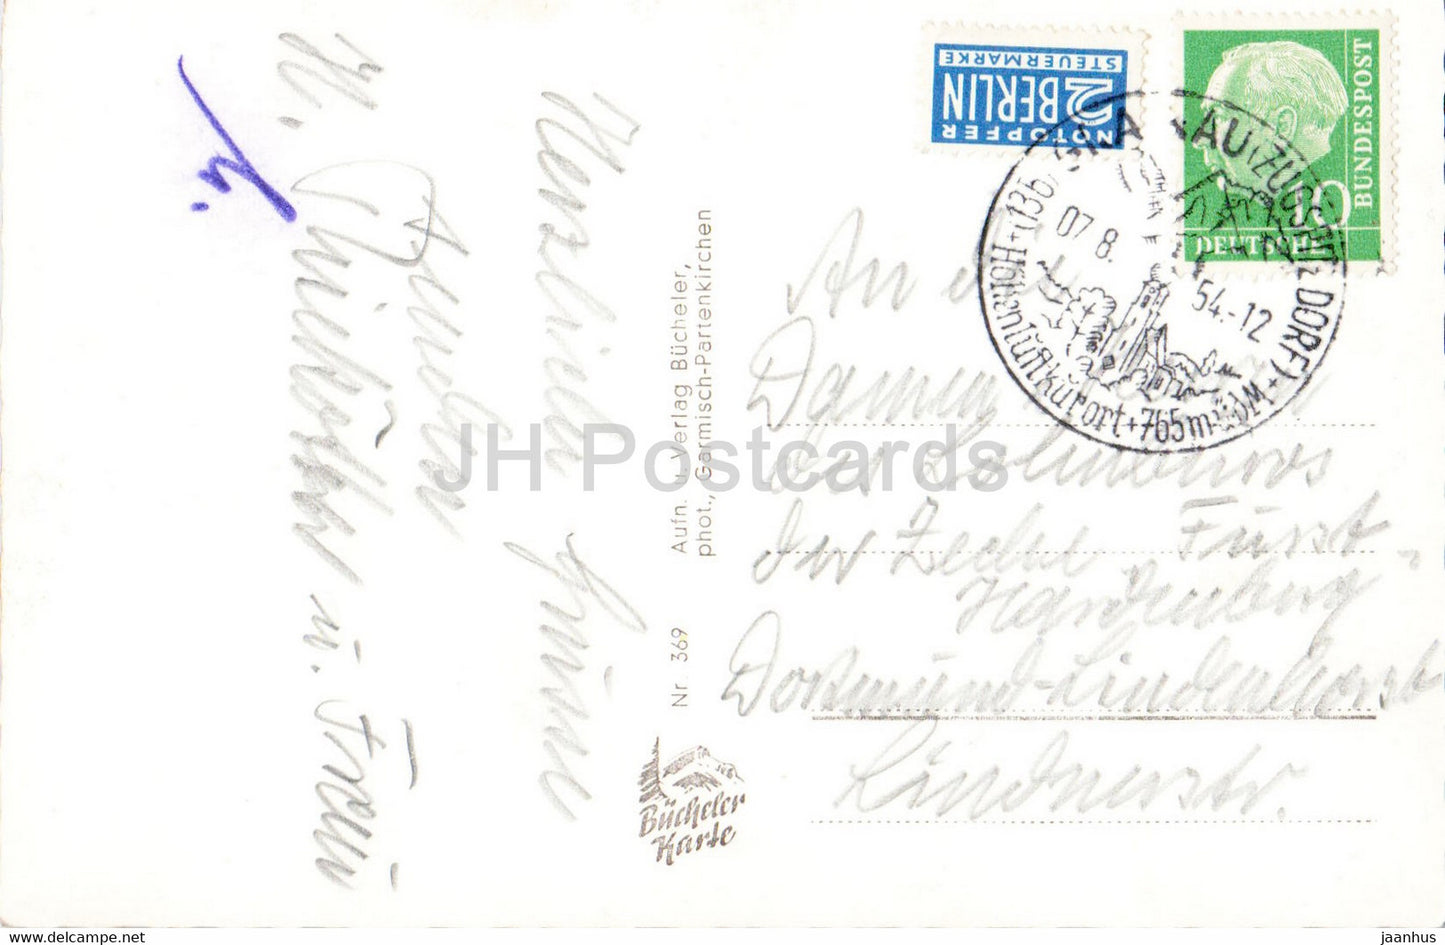 Grusse aus den Bergen - Badersee - Grainau - Eibsee - Riessersee - train - carte postale ancienne - 1956 - Allemagne - utilisé